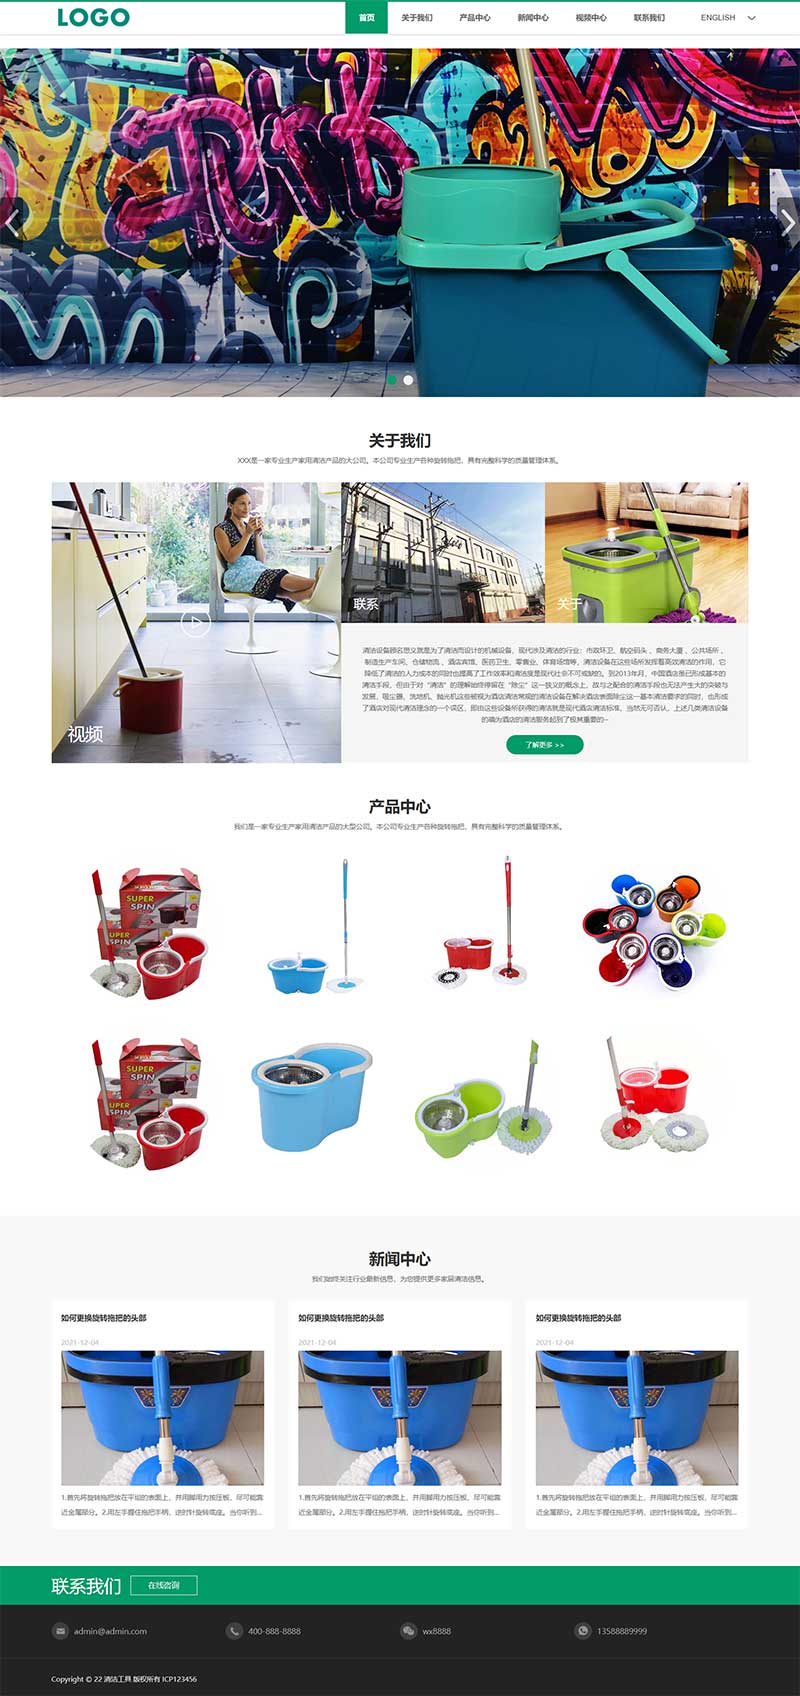 中英文双语清洁工具企业网站模板 外贸清洁设备网站源码下载